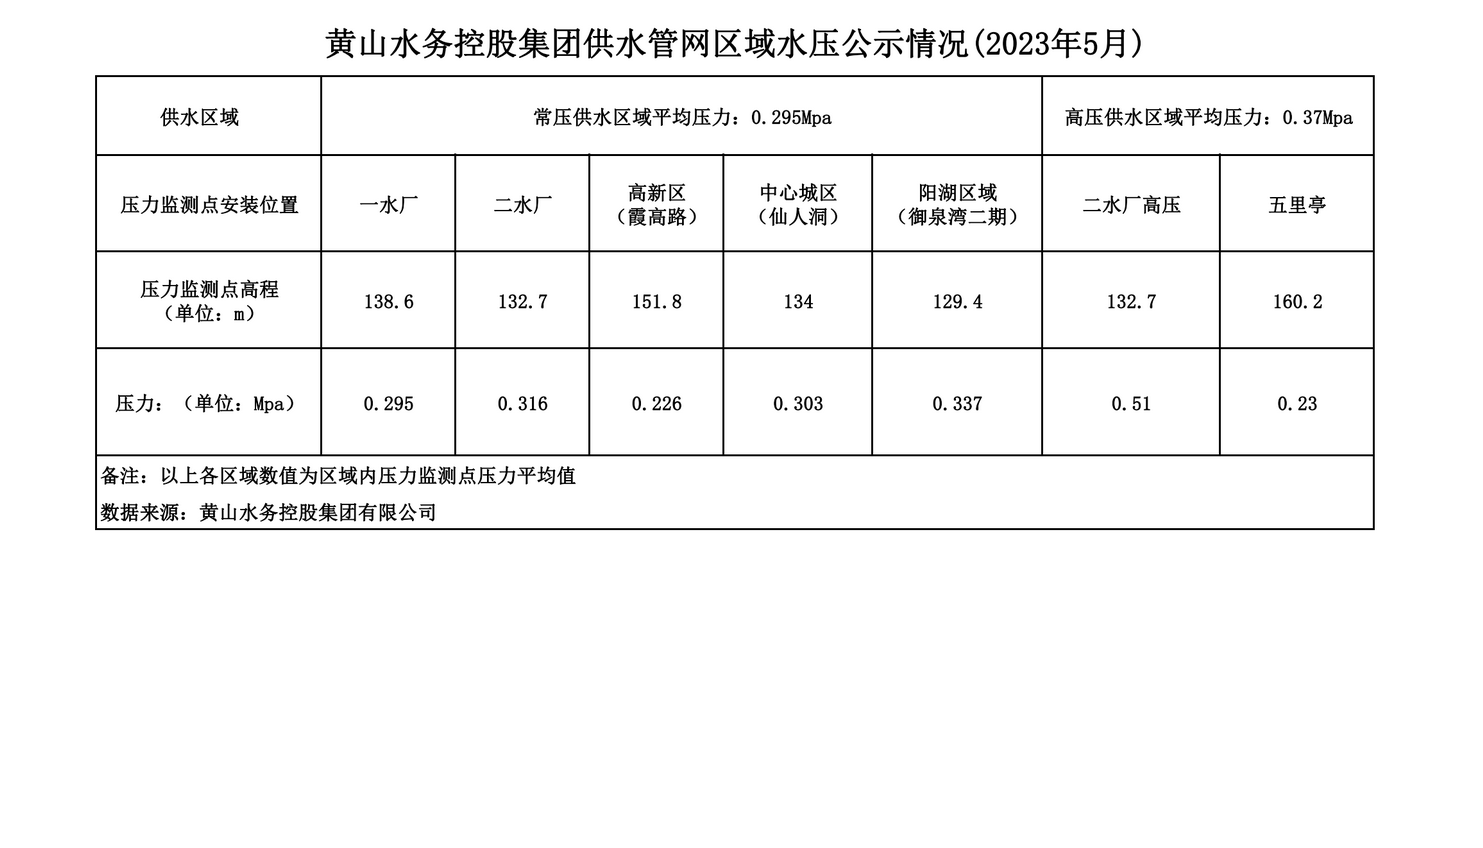 黄山水务控股集团供水管网区域水压公示情况(2023年5月)_00.png